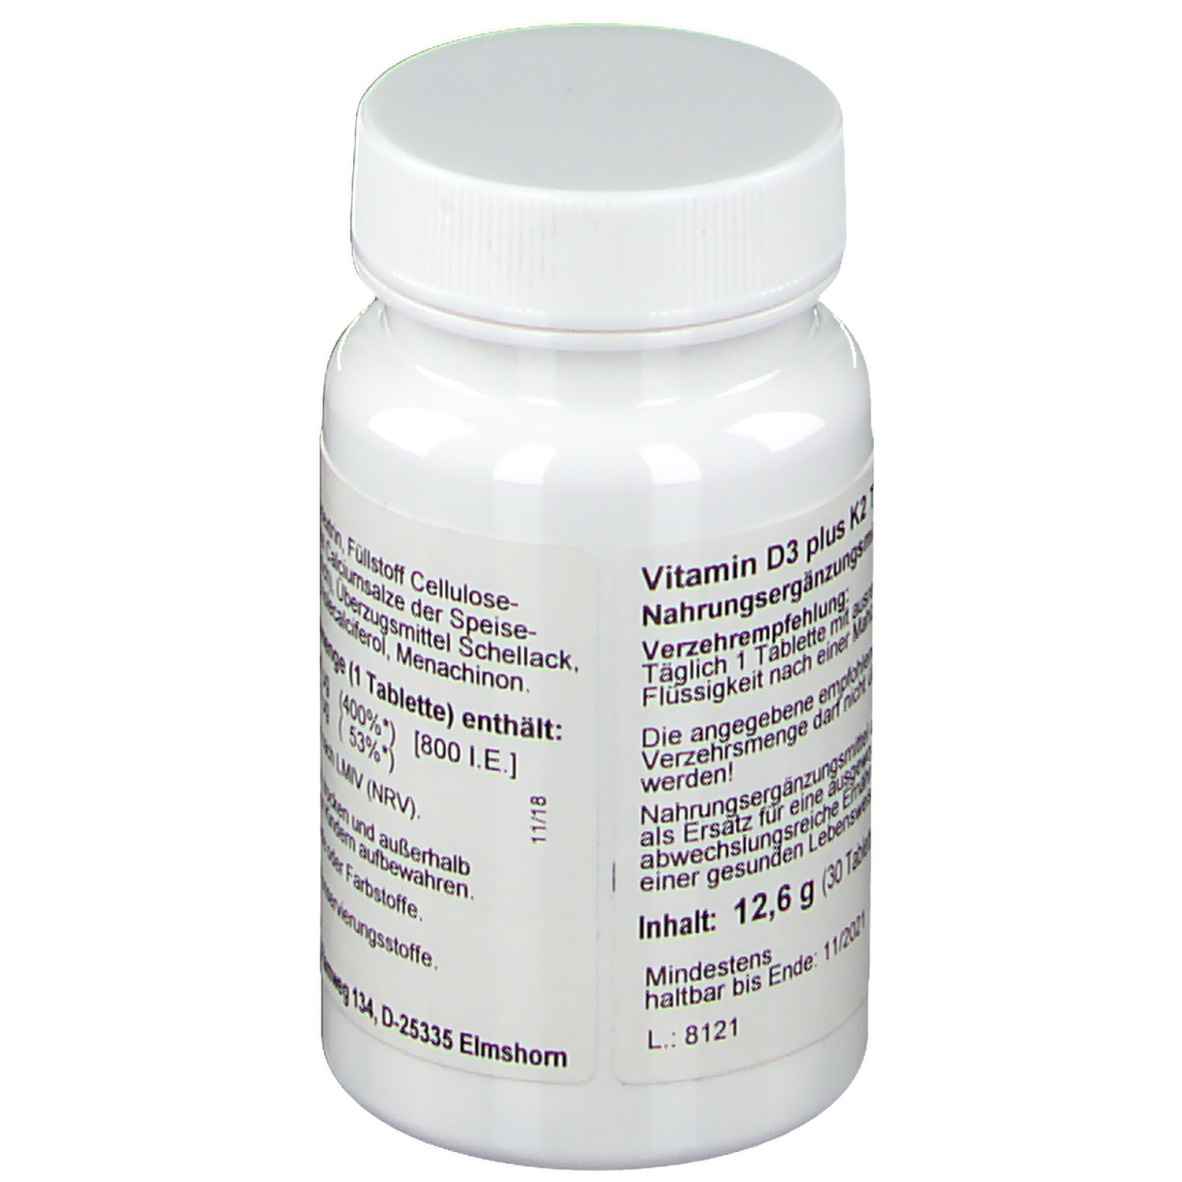 Synomed Vitamin D3 Plus K2 Shop Apotheke At